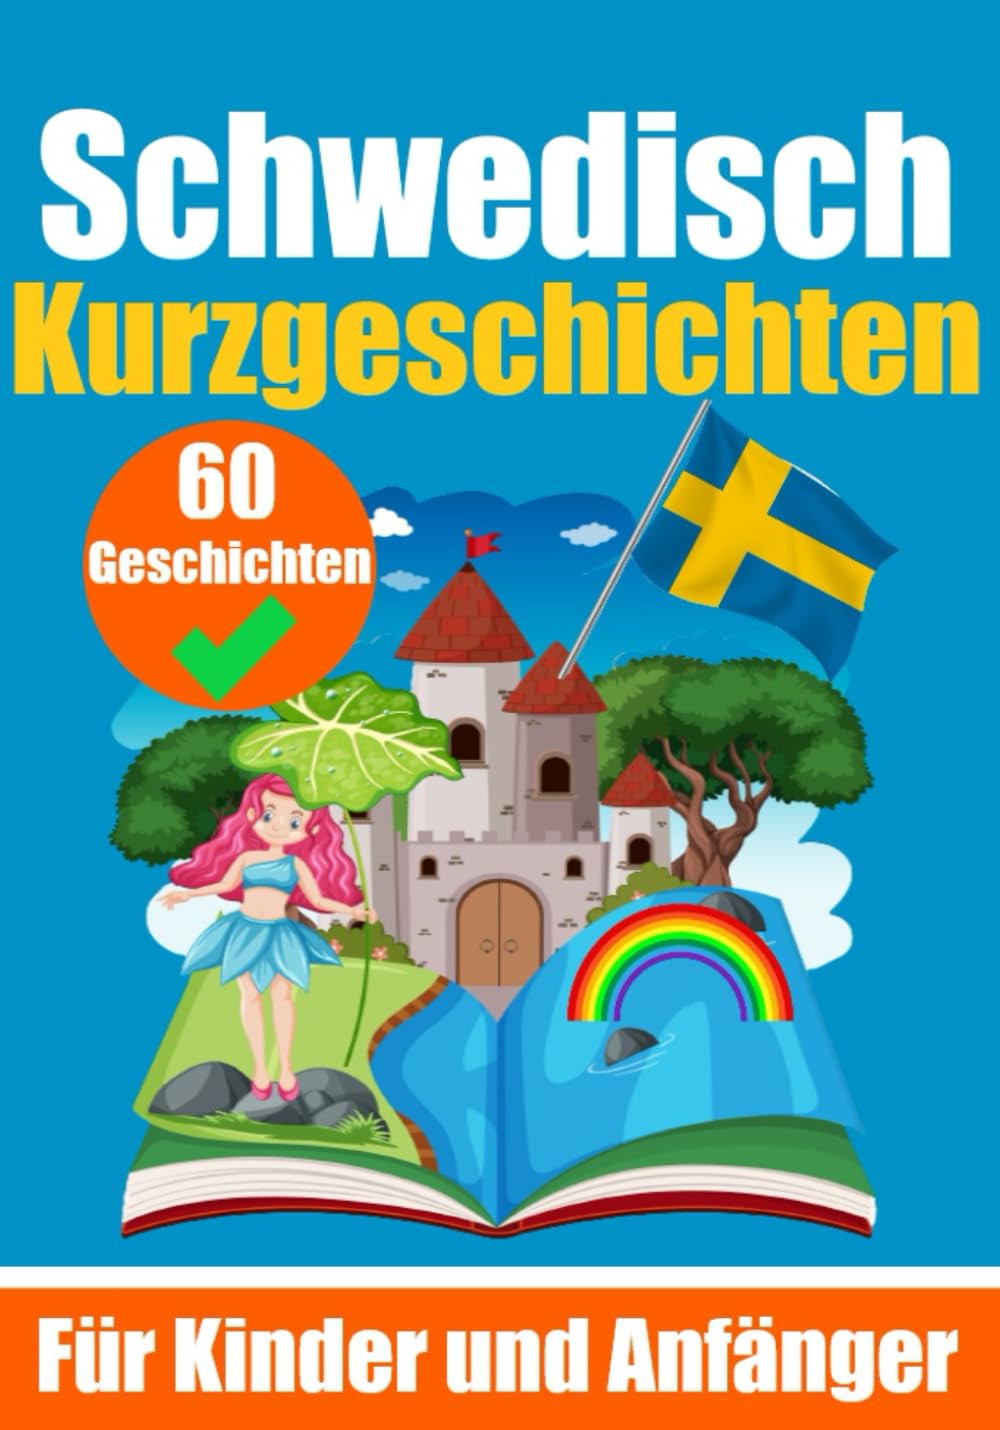 60 Kurzgeschichten auf Schwedisch | Für Kinder und Anfänger - Skriuwer.com